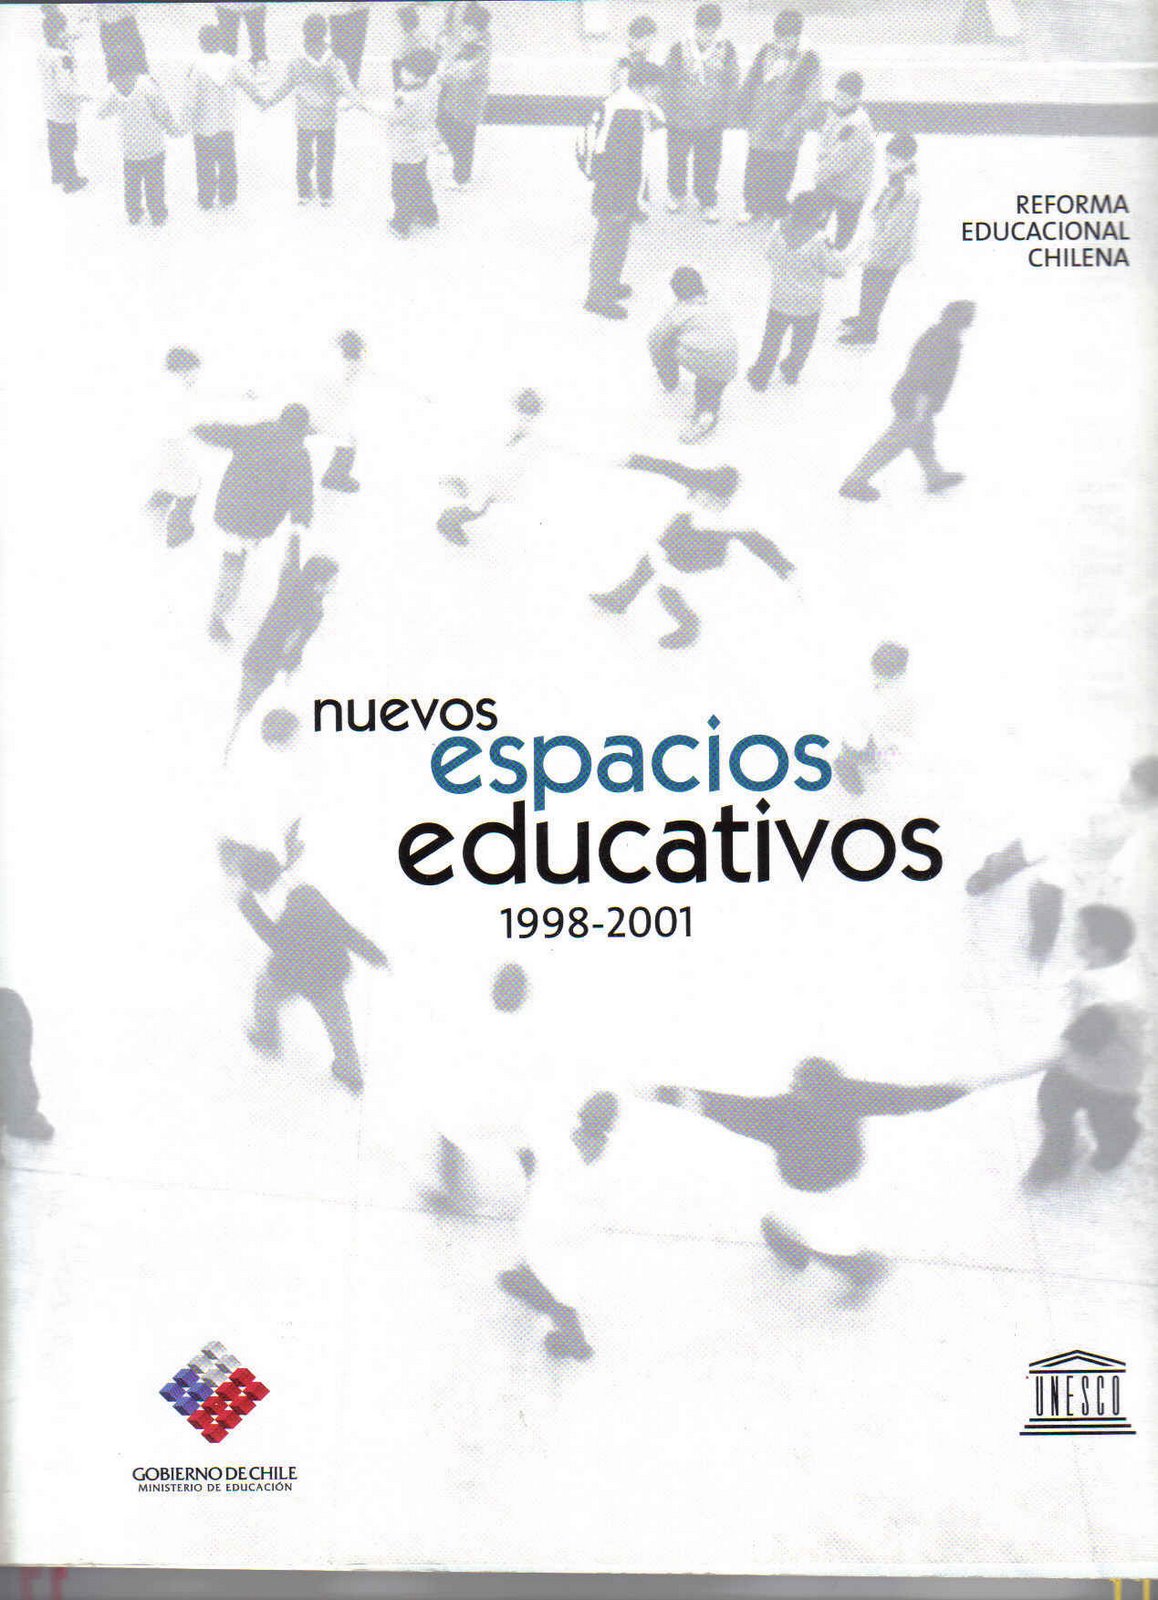 [libro+reforma+educacional+chilena_nuevos+espacios+educativos+1_fin.jpg]